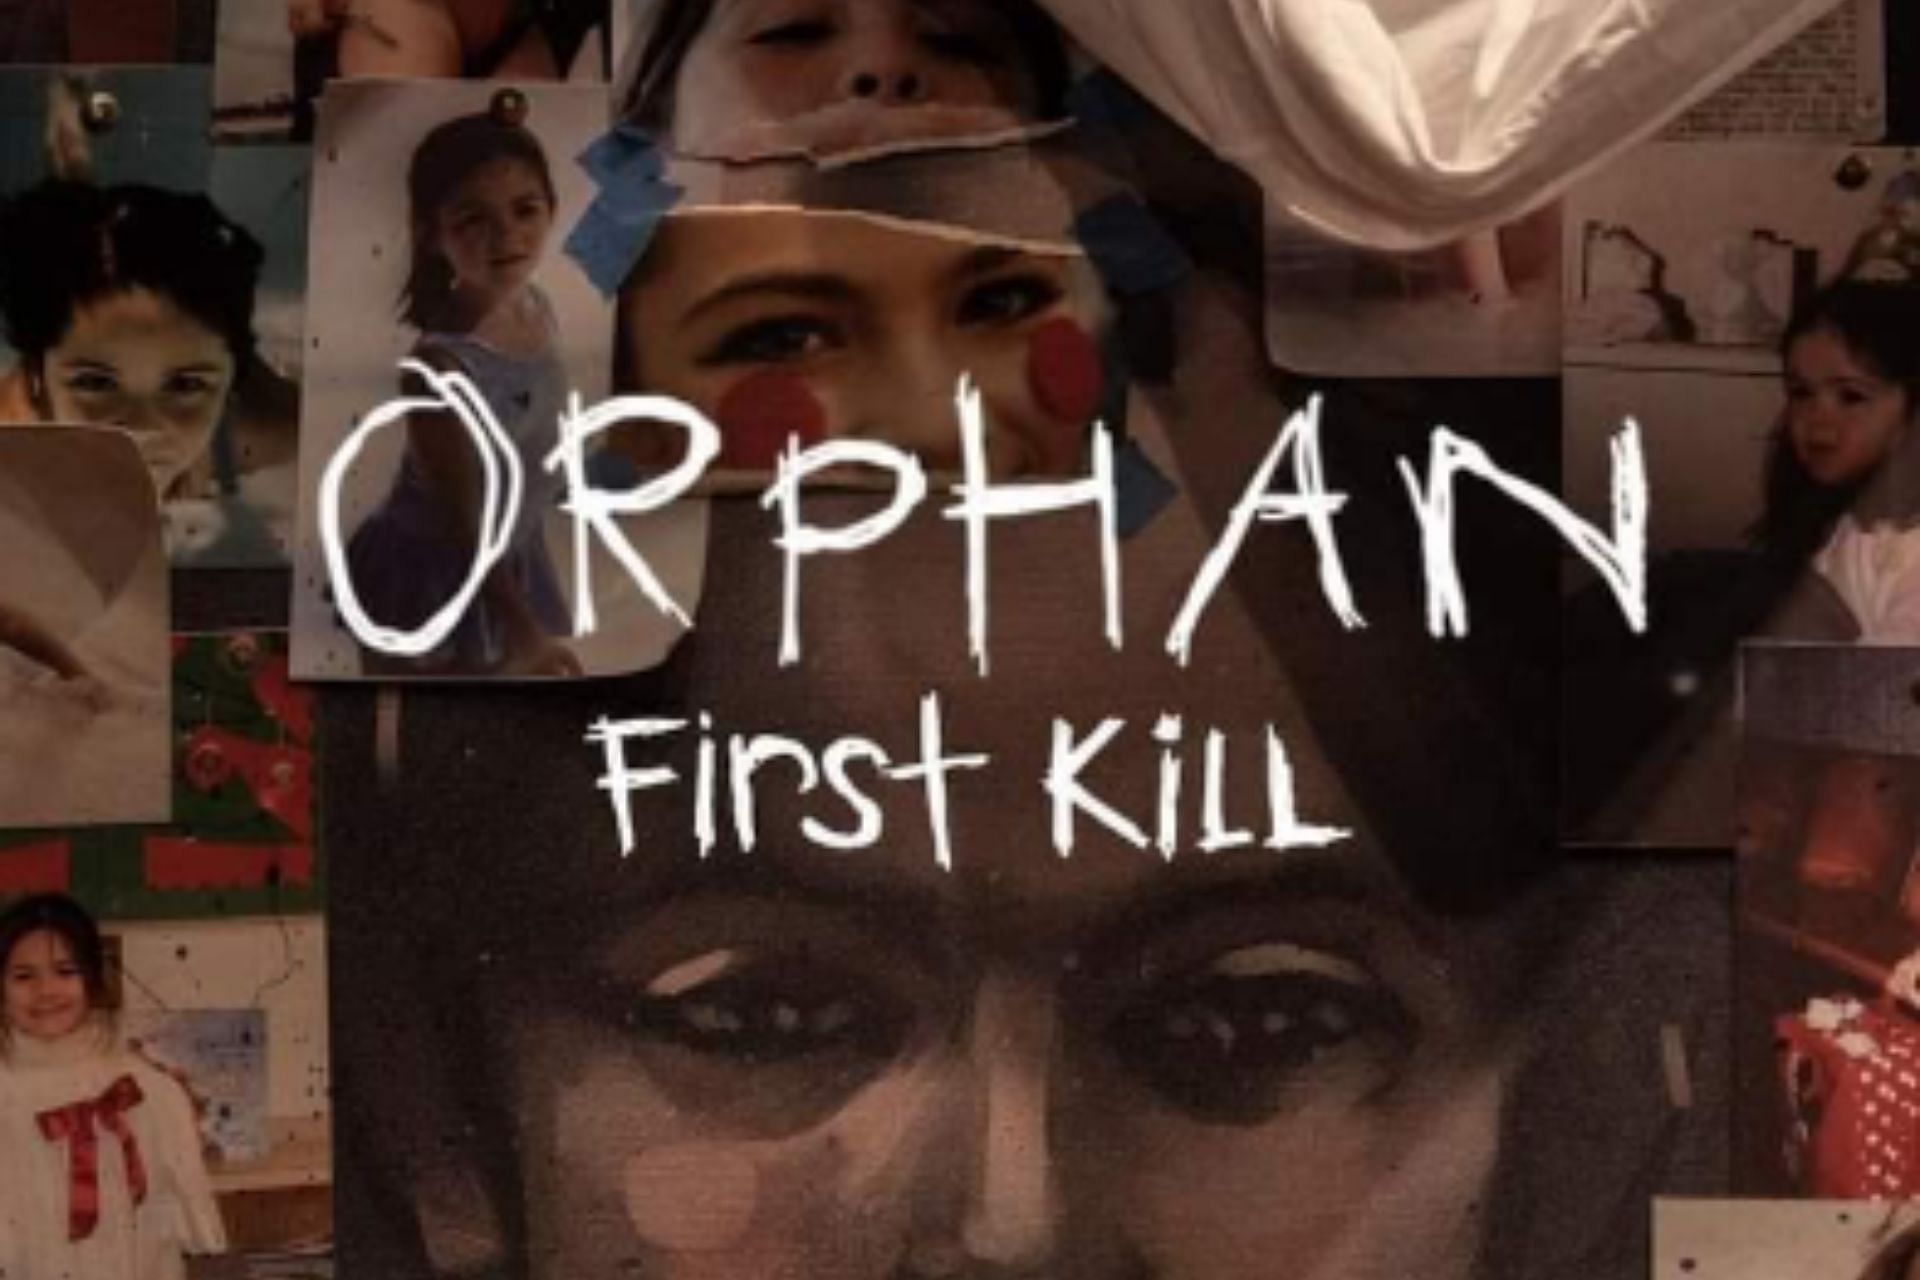 Orphan First Kill poster (Image via IMDb)